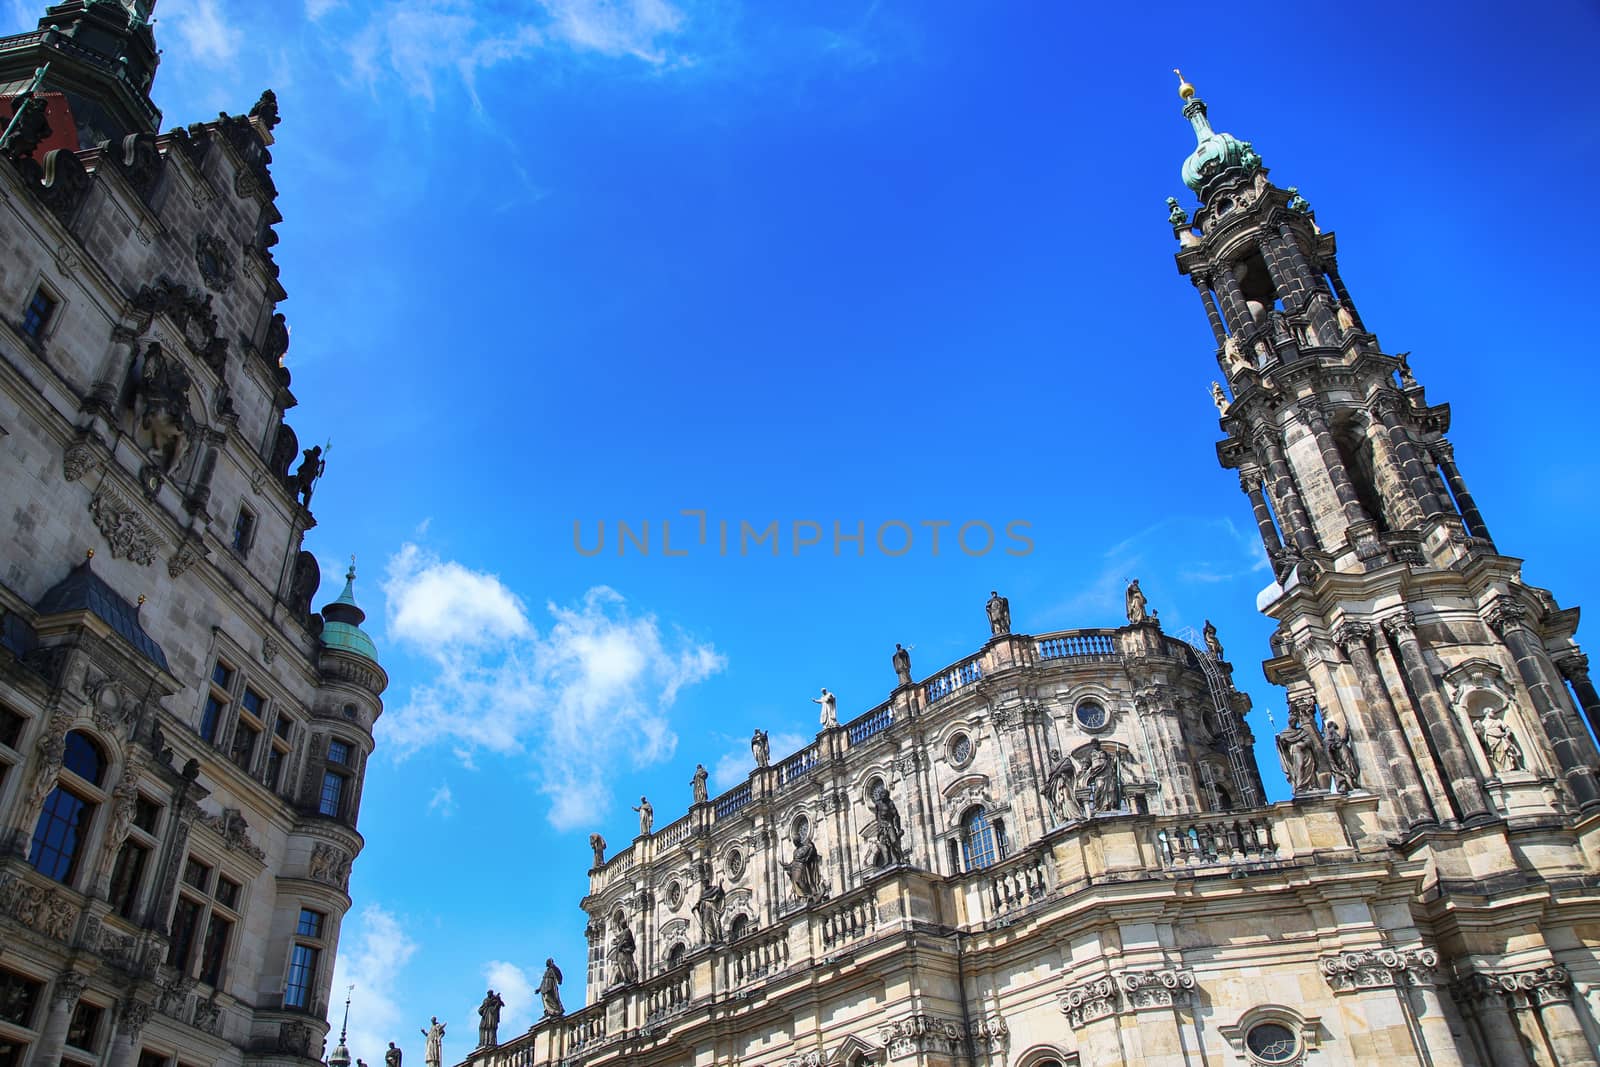 Katholische Hofkirche, Schlossplatz in Dresden, State of Saxony, by vladacanon